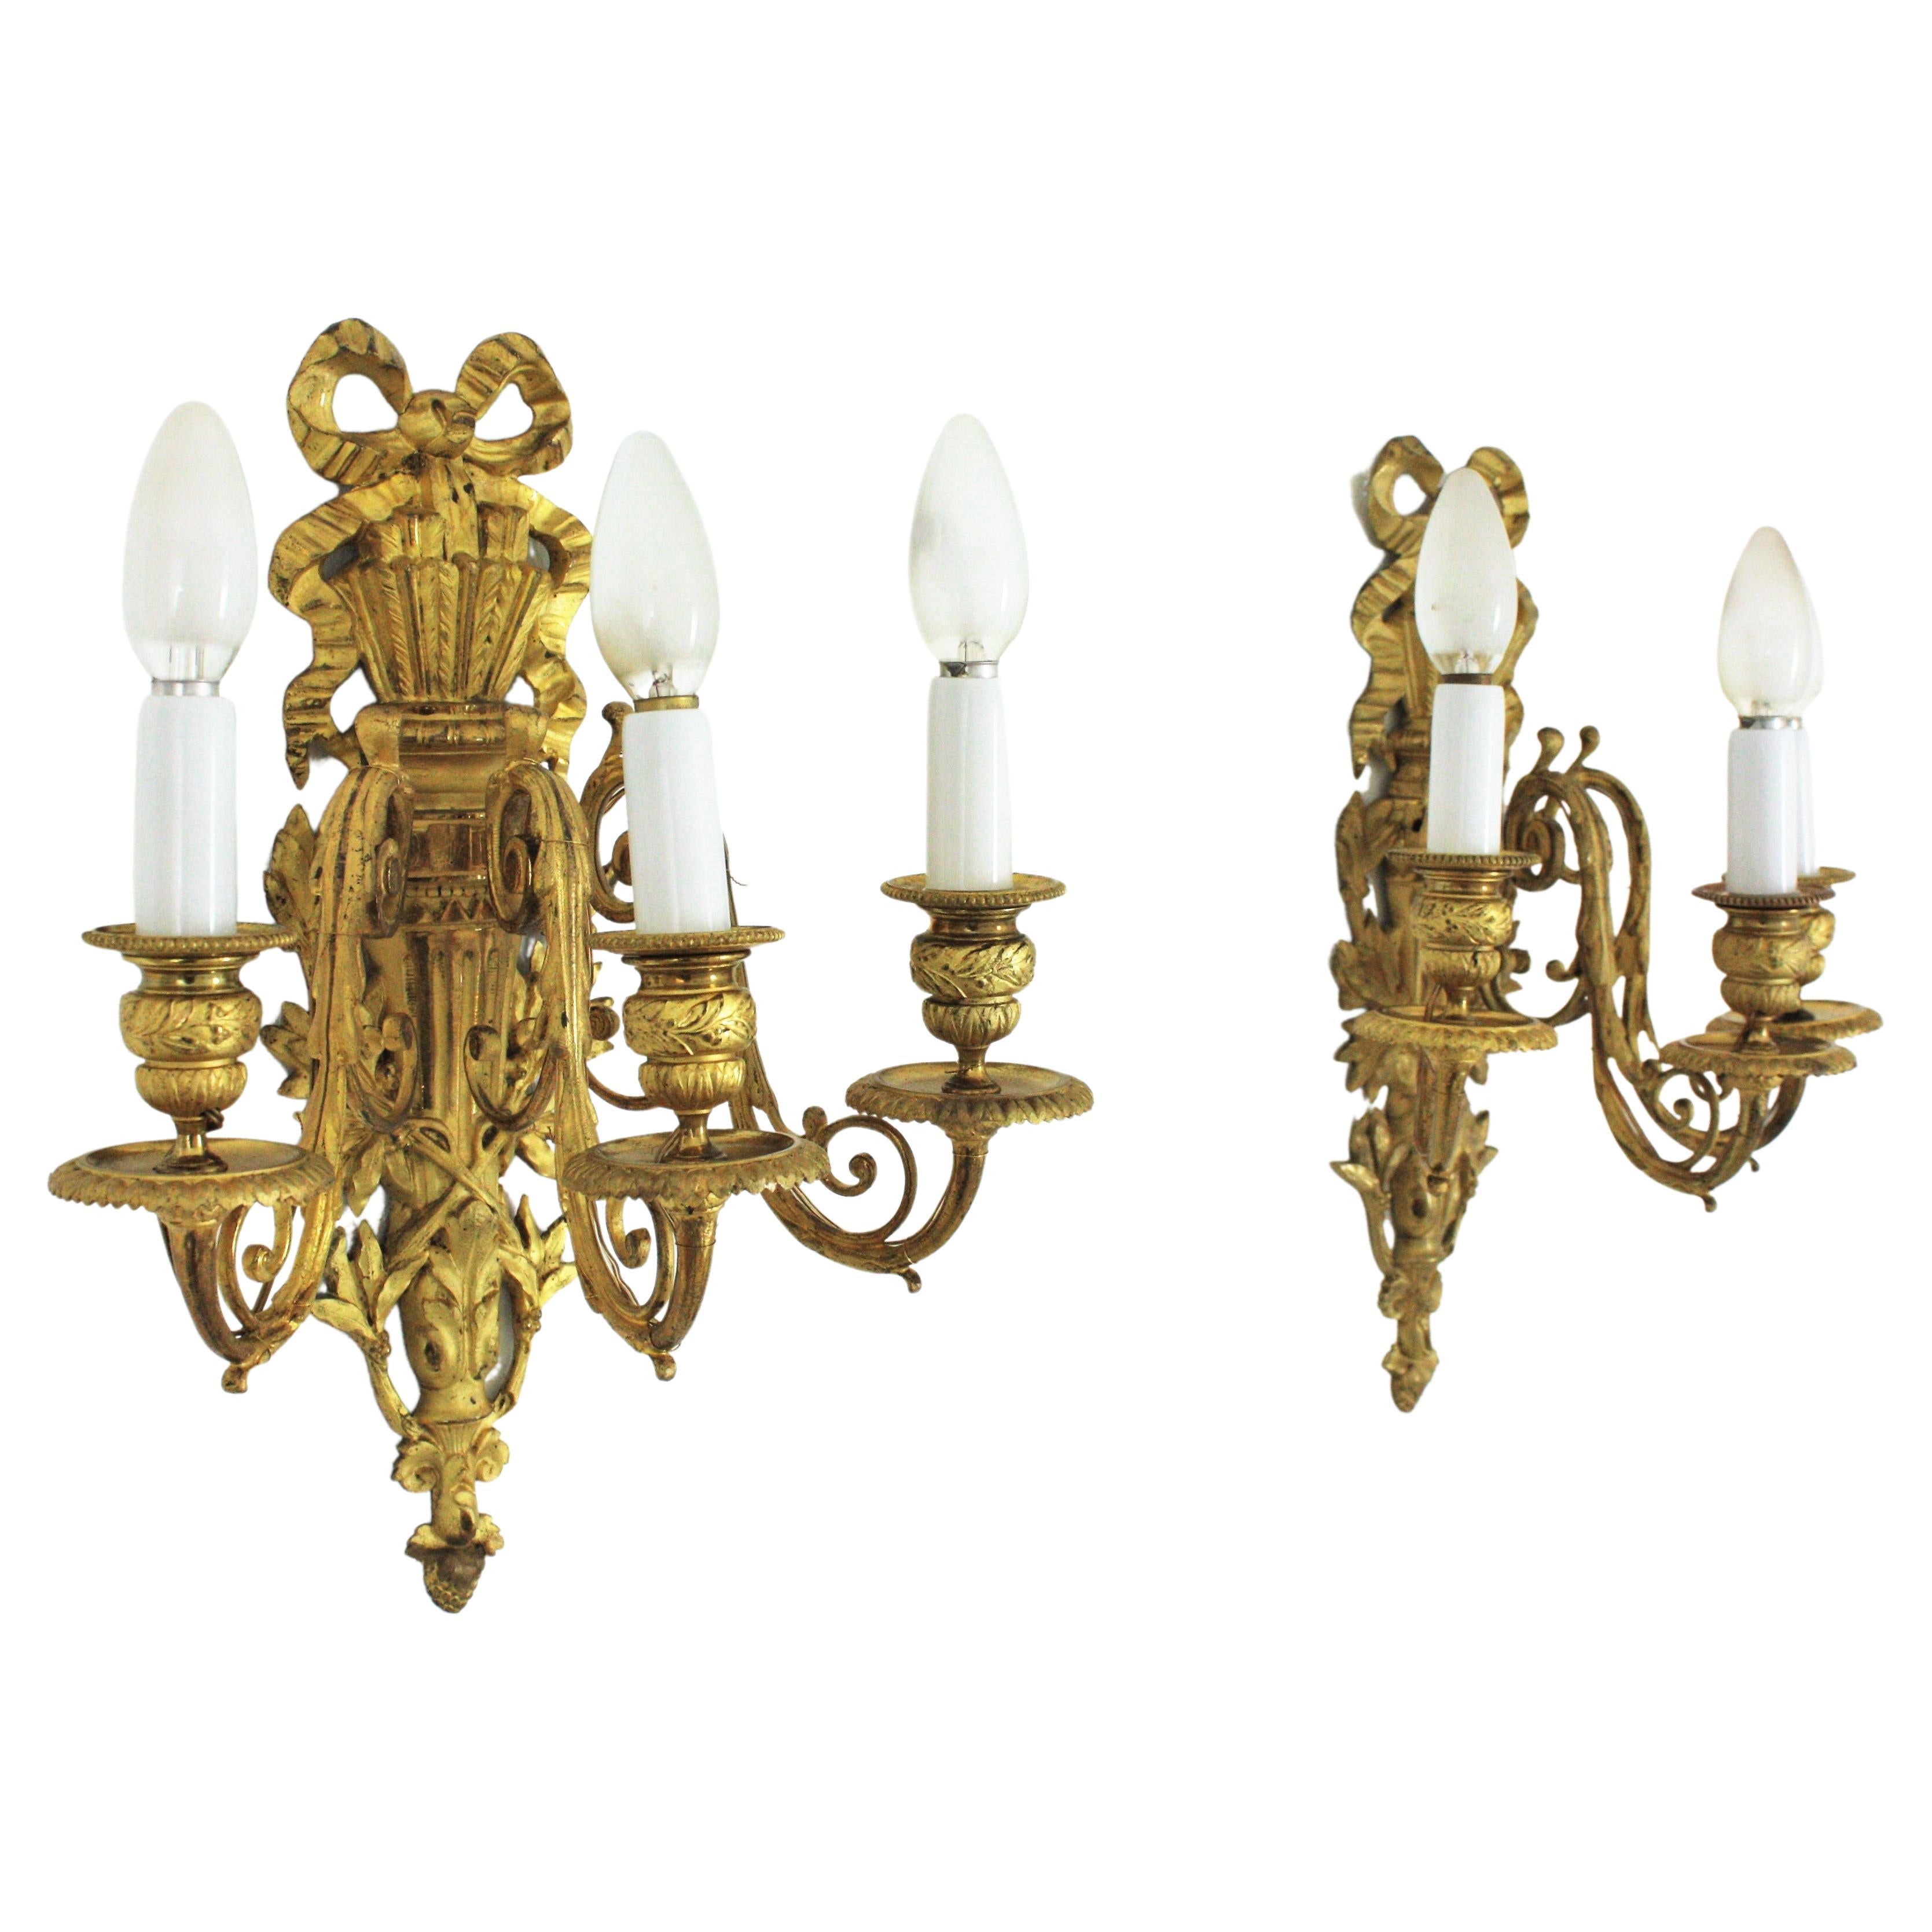 
Zwei neoklassizistische Wandleuchter im Louis-XVI-Stil aus Ormolu und vergoldeter Bronze
Frankreich, 20. Jahrhundert
Maßnahmen: 
41 cm H x 30 cm B x 21 cm T // 16,14 in H x 11,81 in B x 8,26 in T
Jedes Exemplar wiegt 2,6 kg
Im Verkauf als